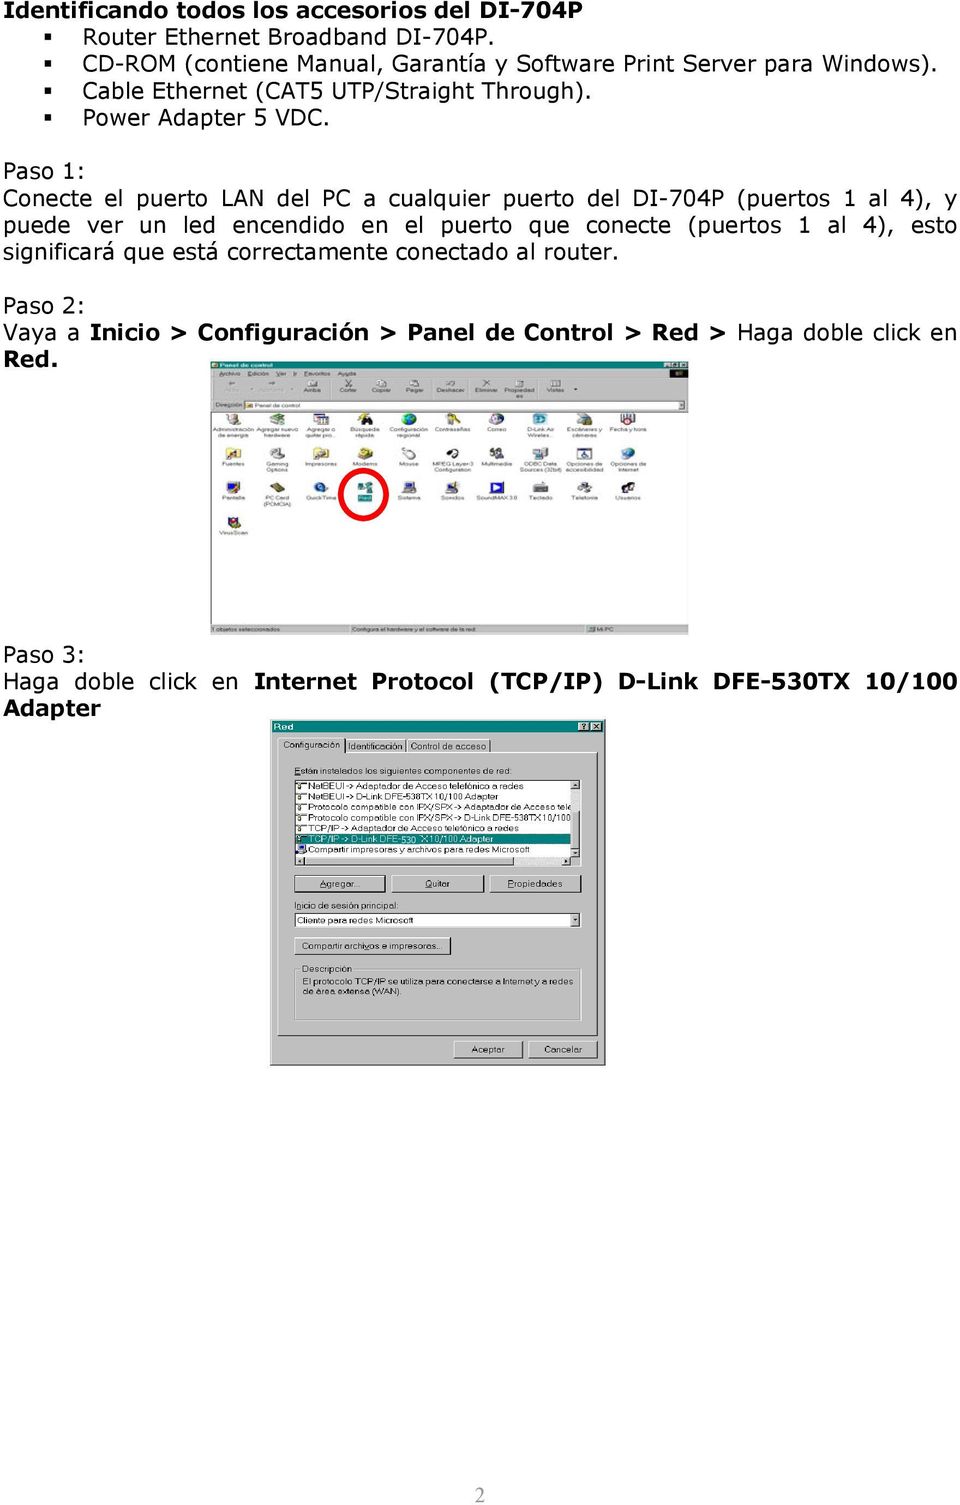 Paso 1: Conecte el puerto LAN del PC a cualquier puerto del DI-704P (puertos 1 al 4), y puede ver un led encendido en el puerto que conecte (puertos 1 al